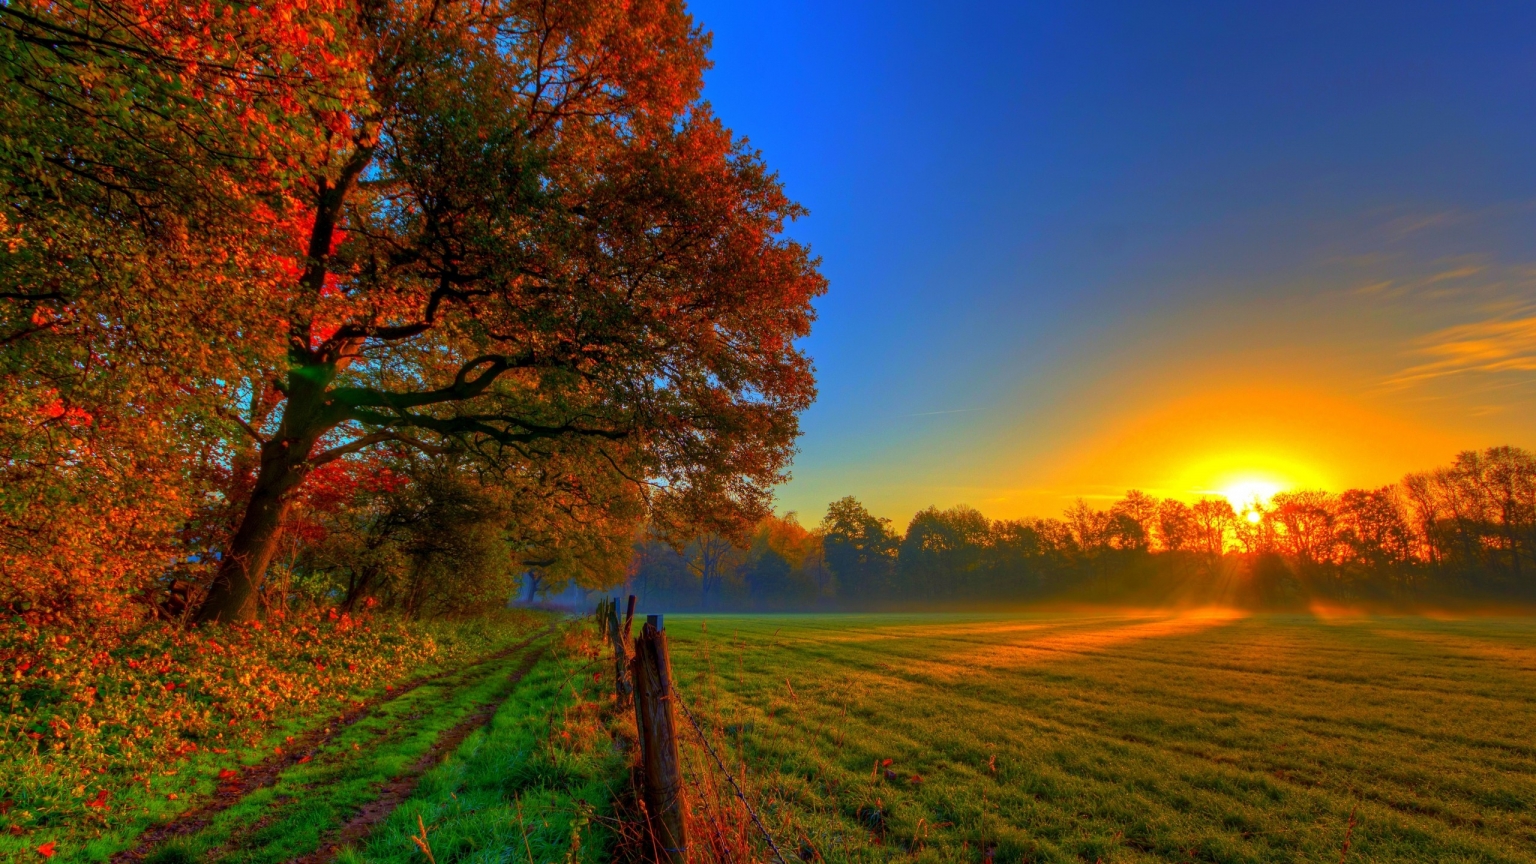 Beautiful Autumn Sunset for 1536 x 864 HDTV resolution